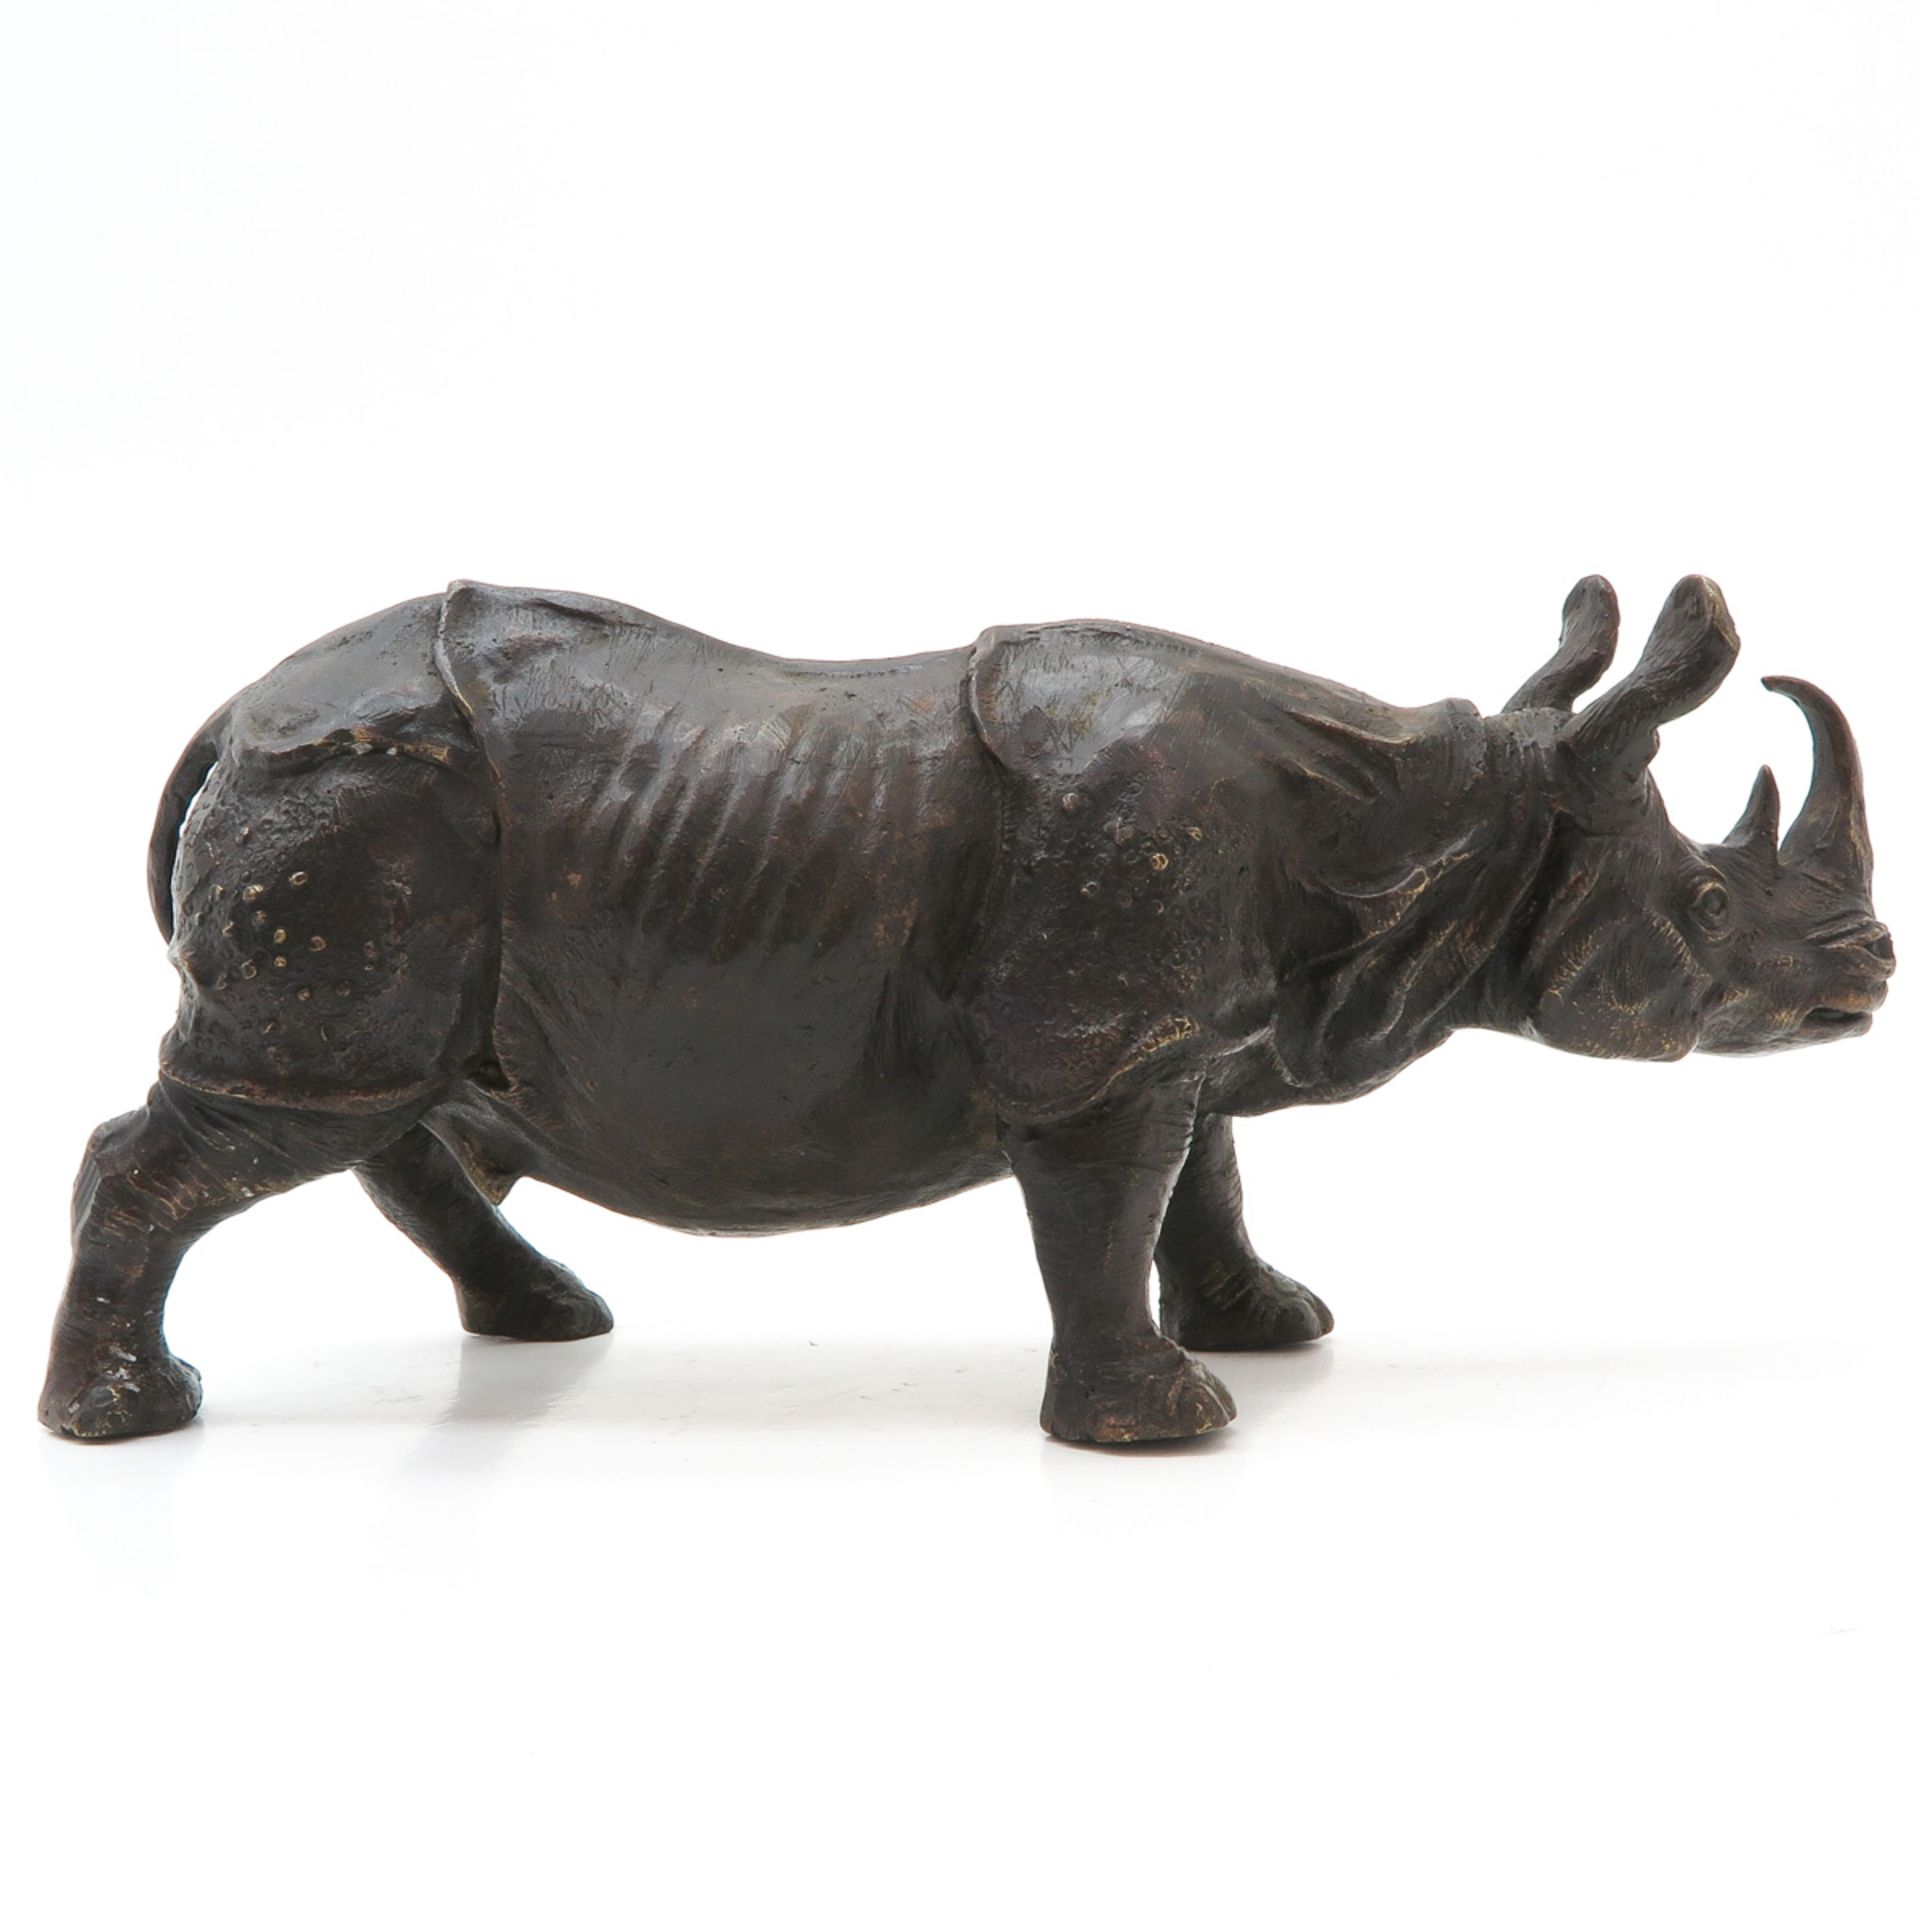 Bronze Sculpture Depicting a Rhino